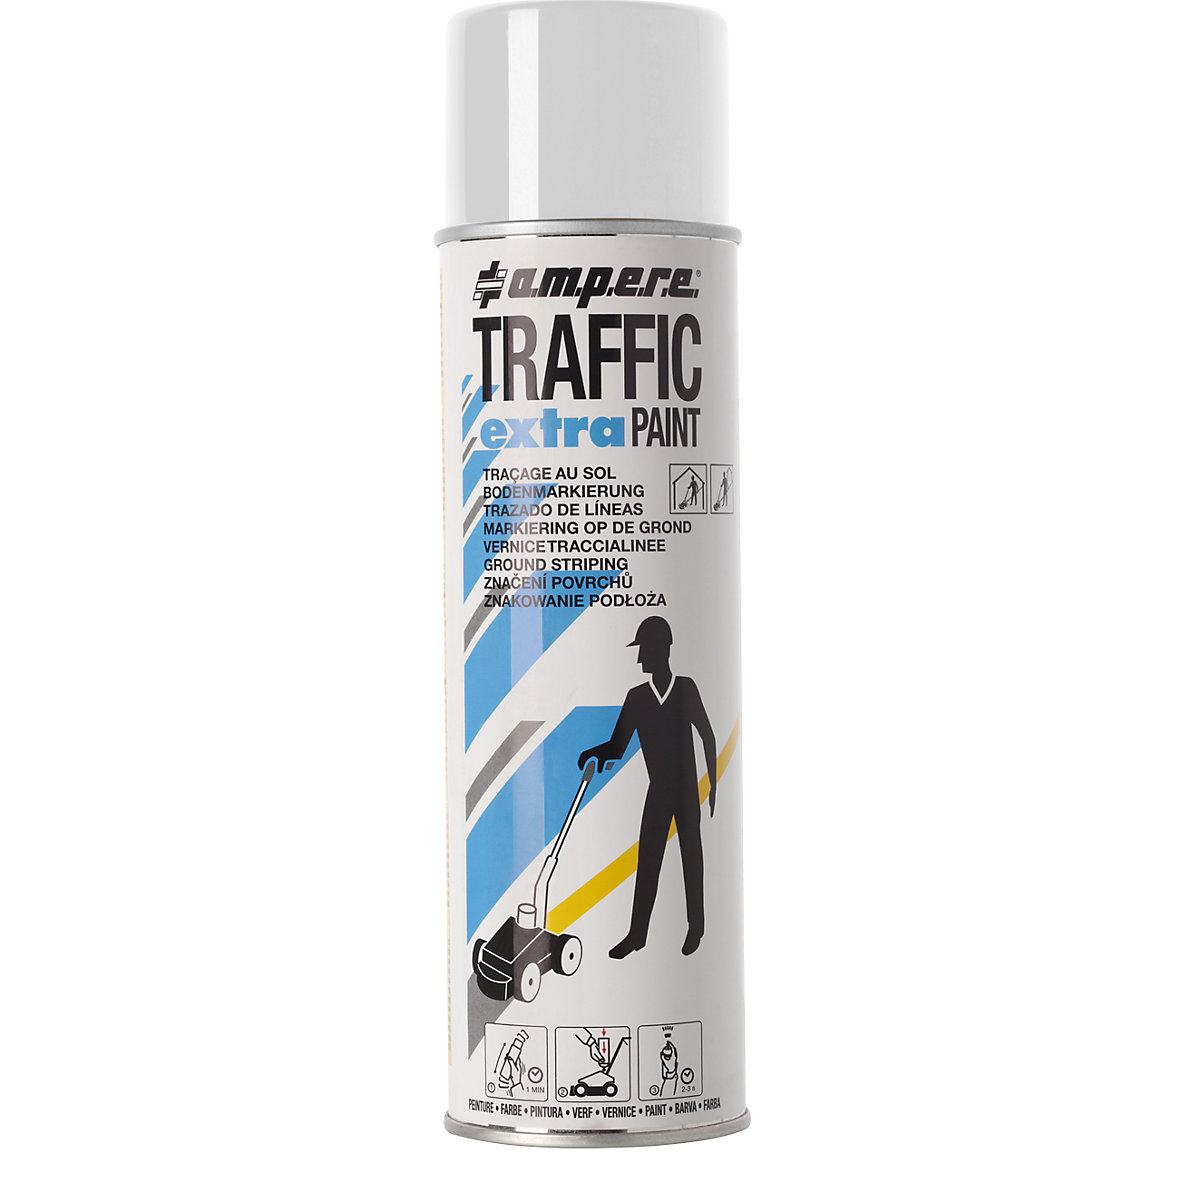 Značkovacia farba Traffic Extra Paint® pre silné zaťaženie – Ampere